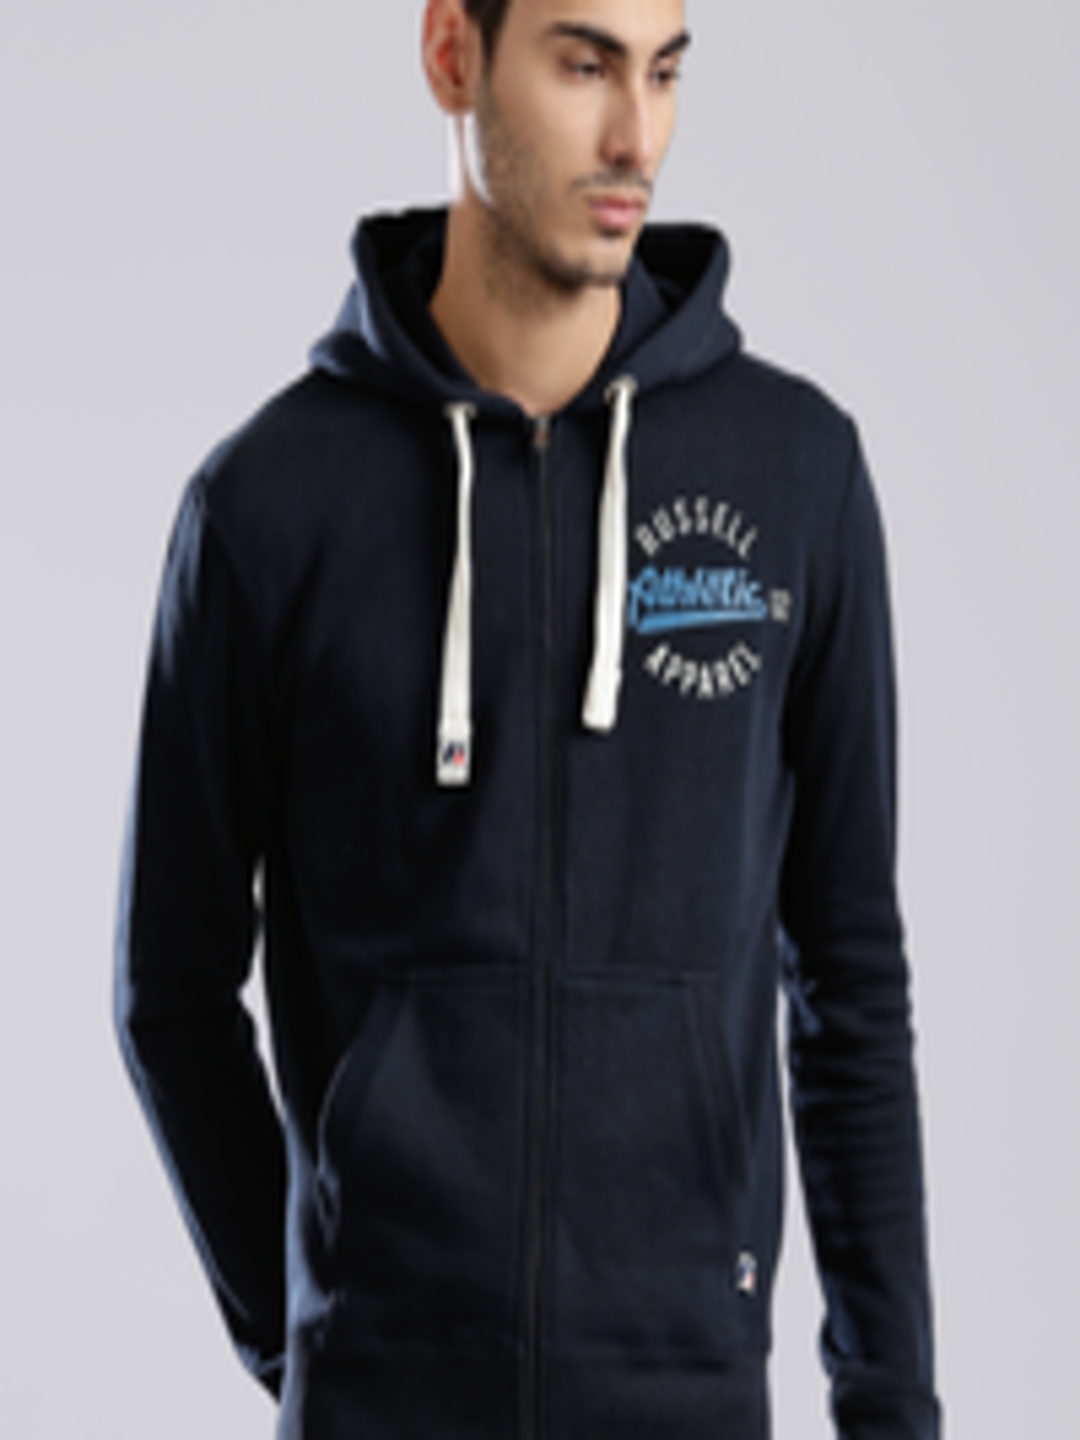 Buy Russell Athletic Navy Printed Hooded Sweatshirt - Sweatshirts for ...